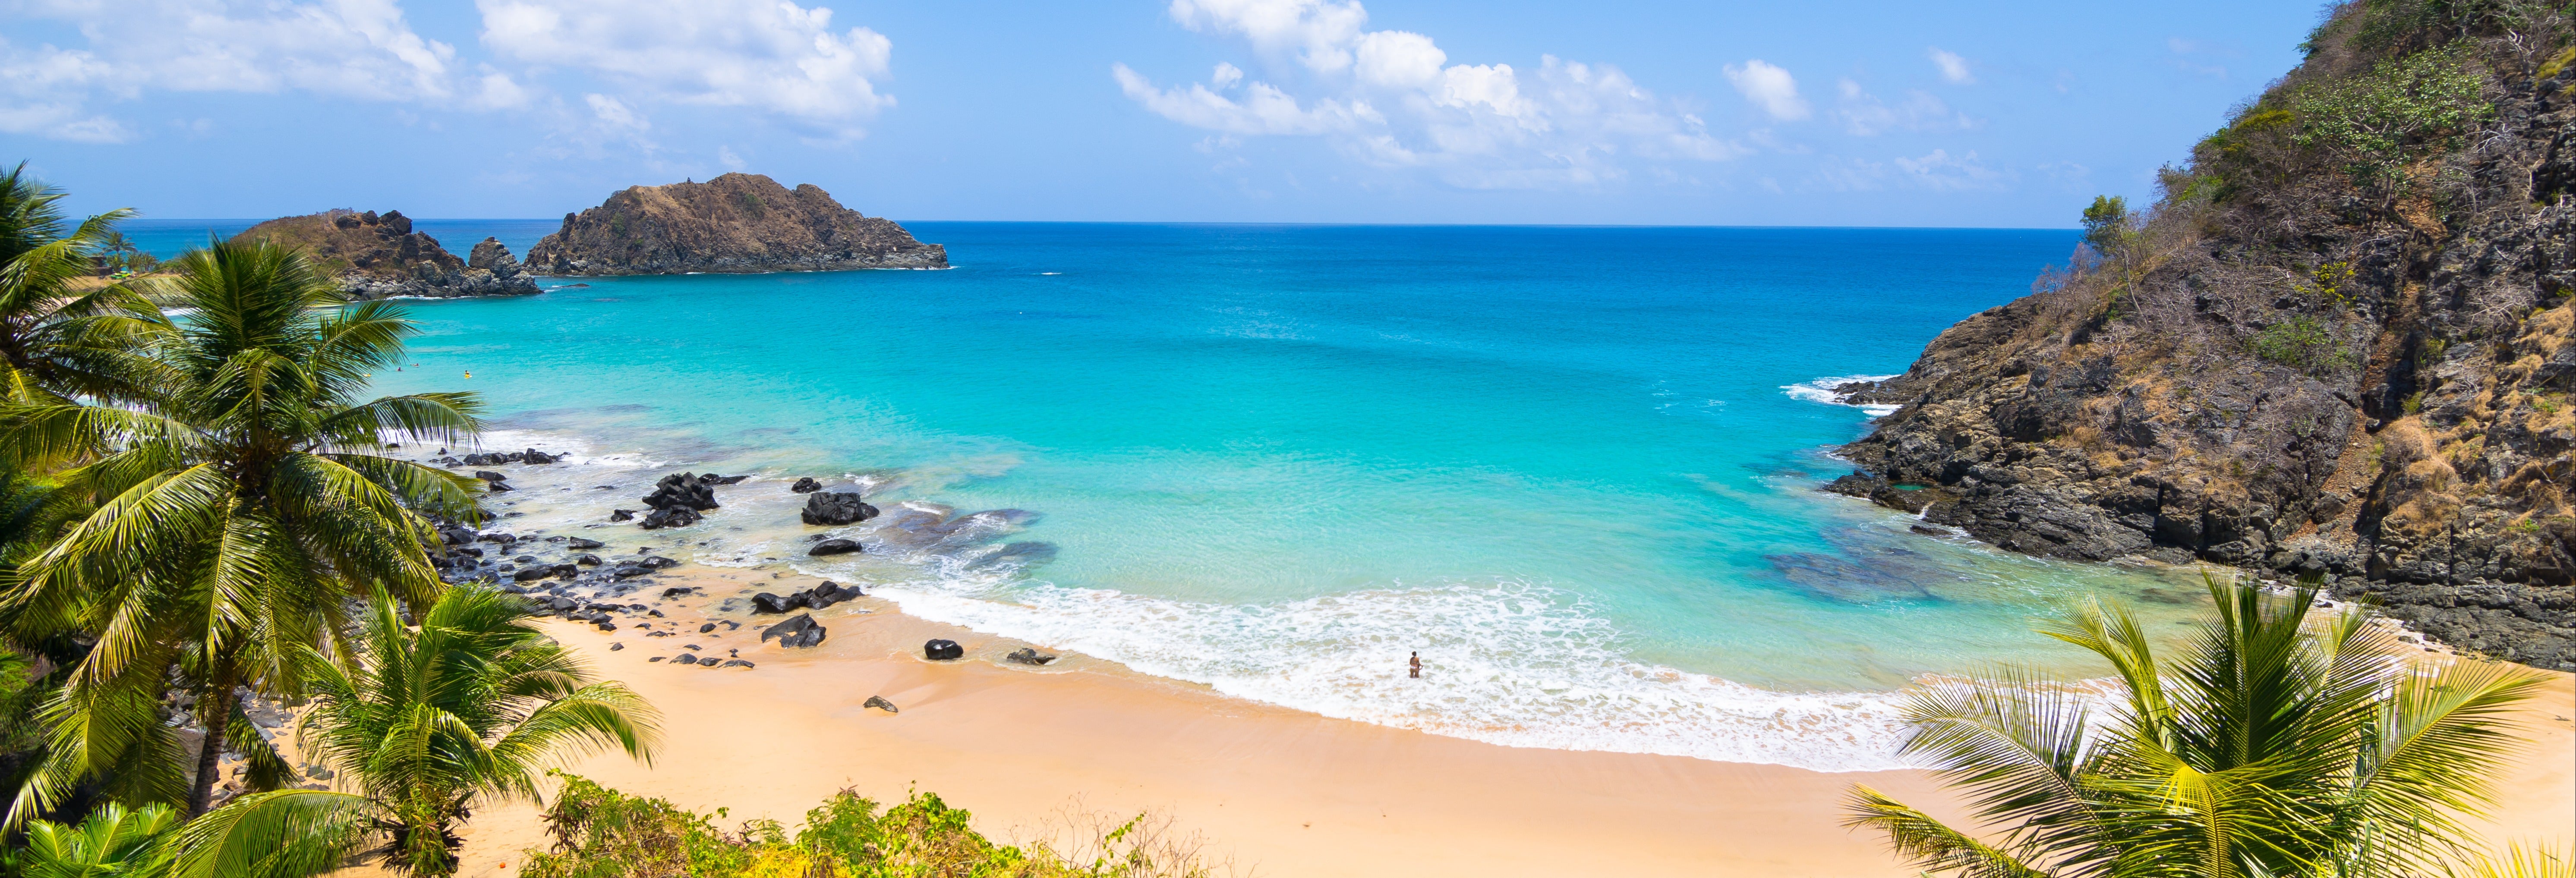 Trilha da Costa Esmeralda + Praias paradisíacas